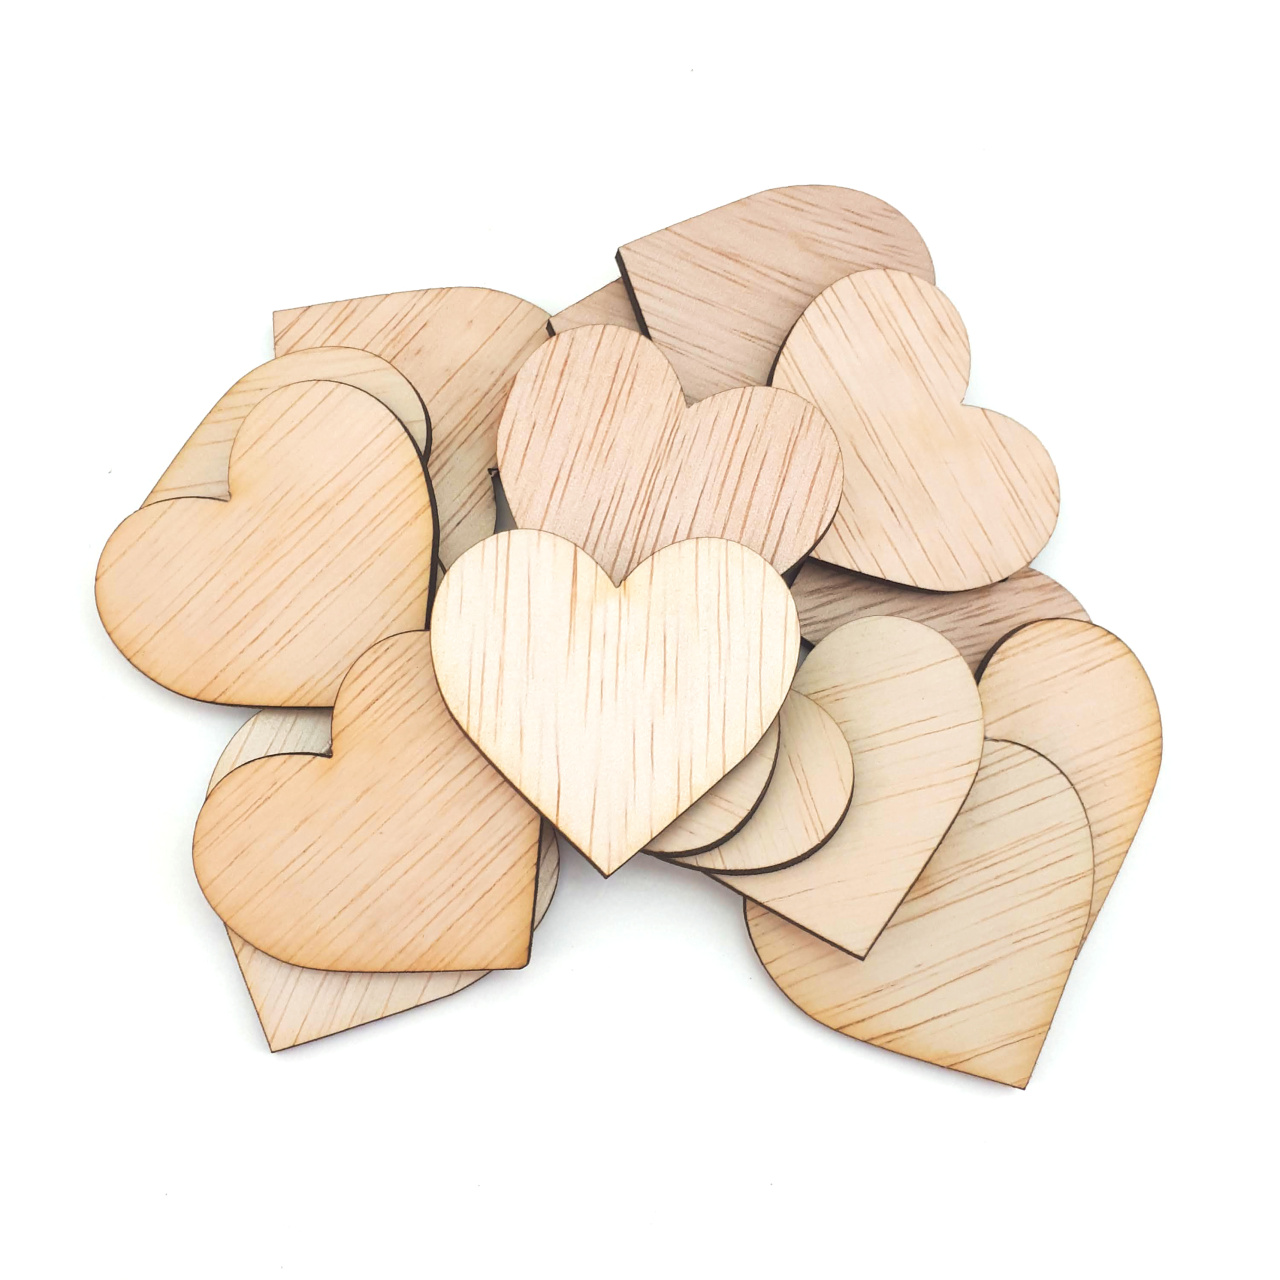 Inimă, 6,5×6 cm, placaj lemn natur